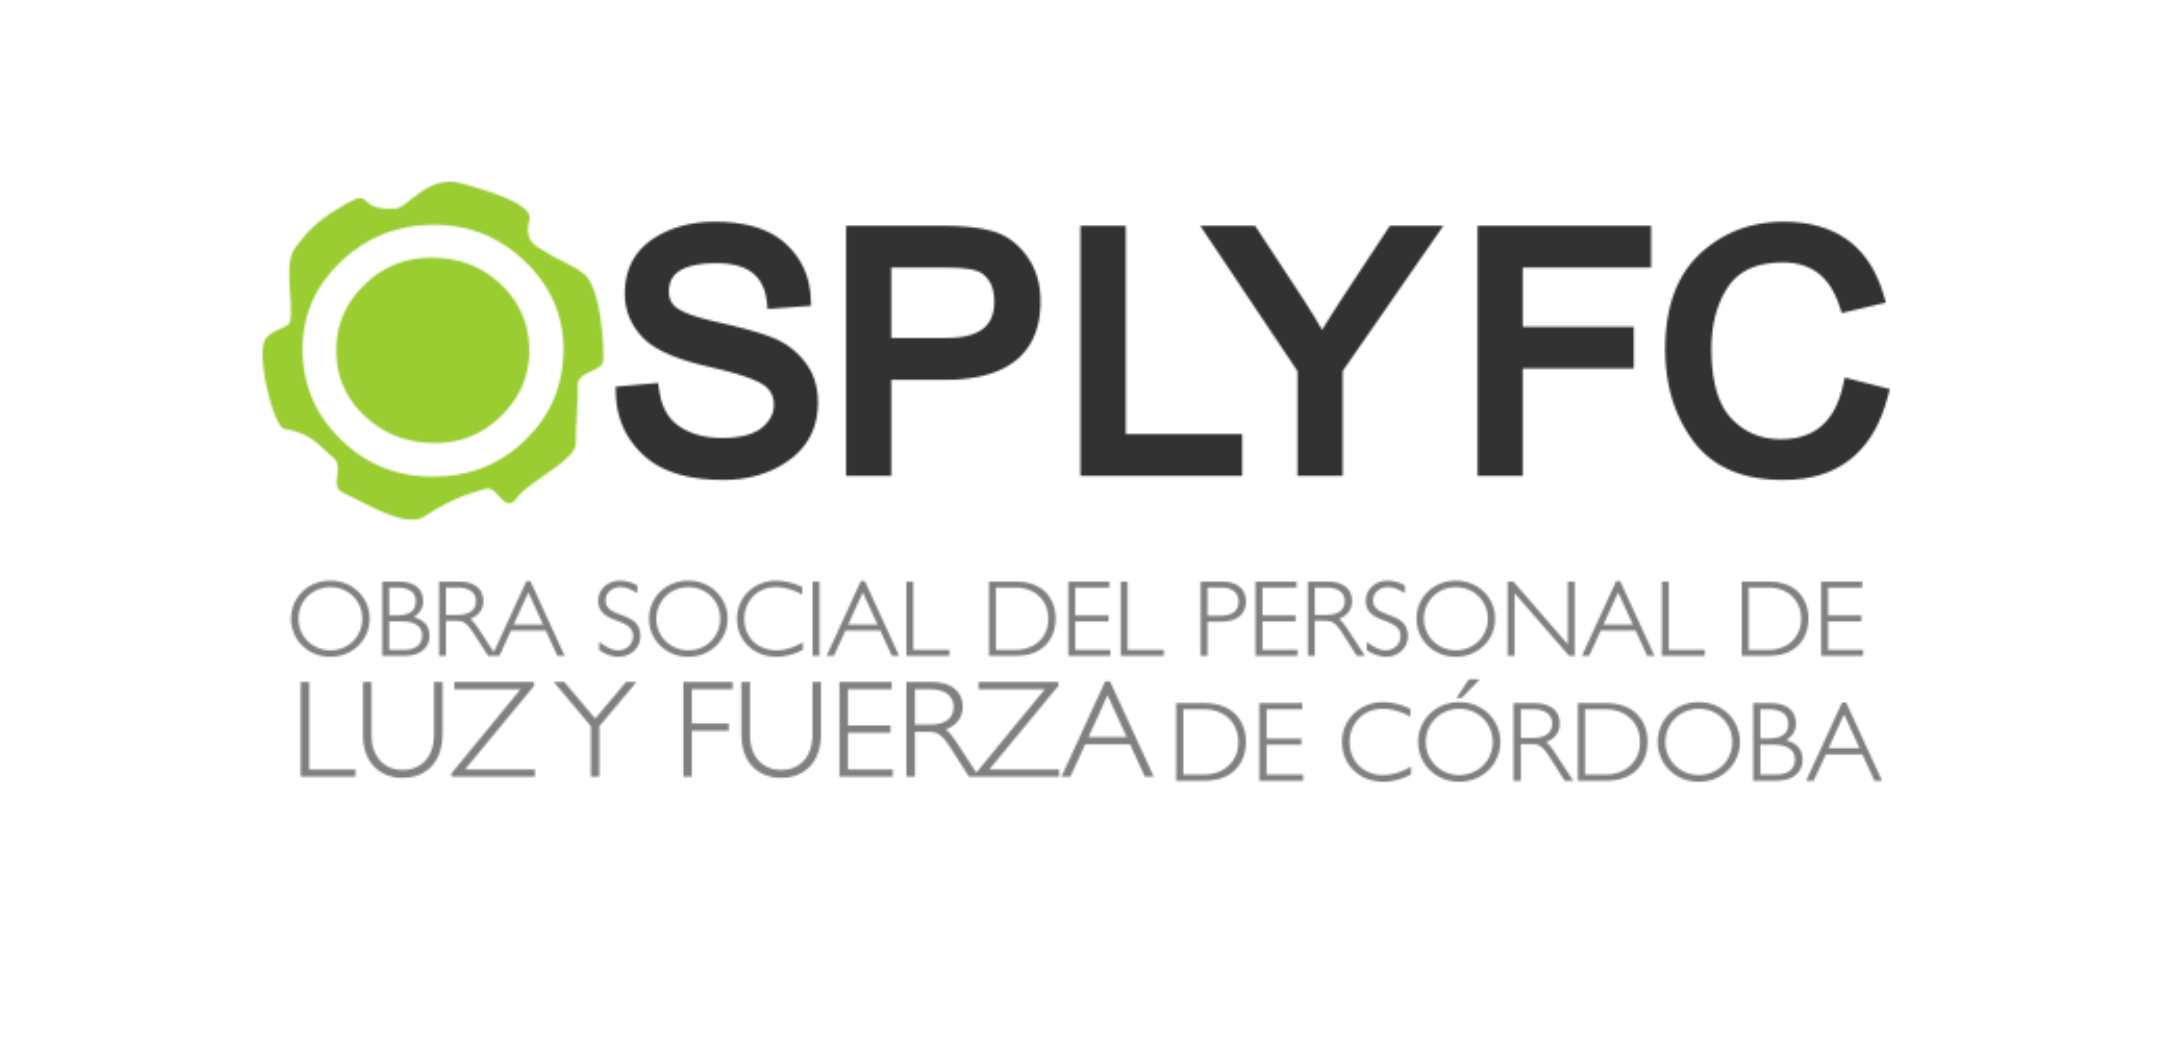 OSPLYFC salud luz y fuerza web SiReLyF